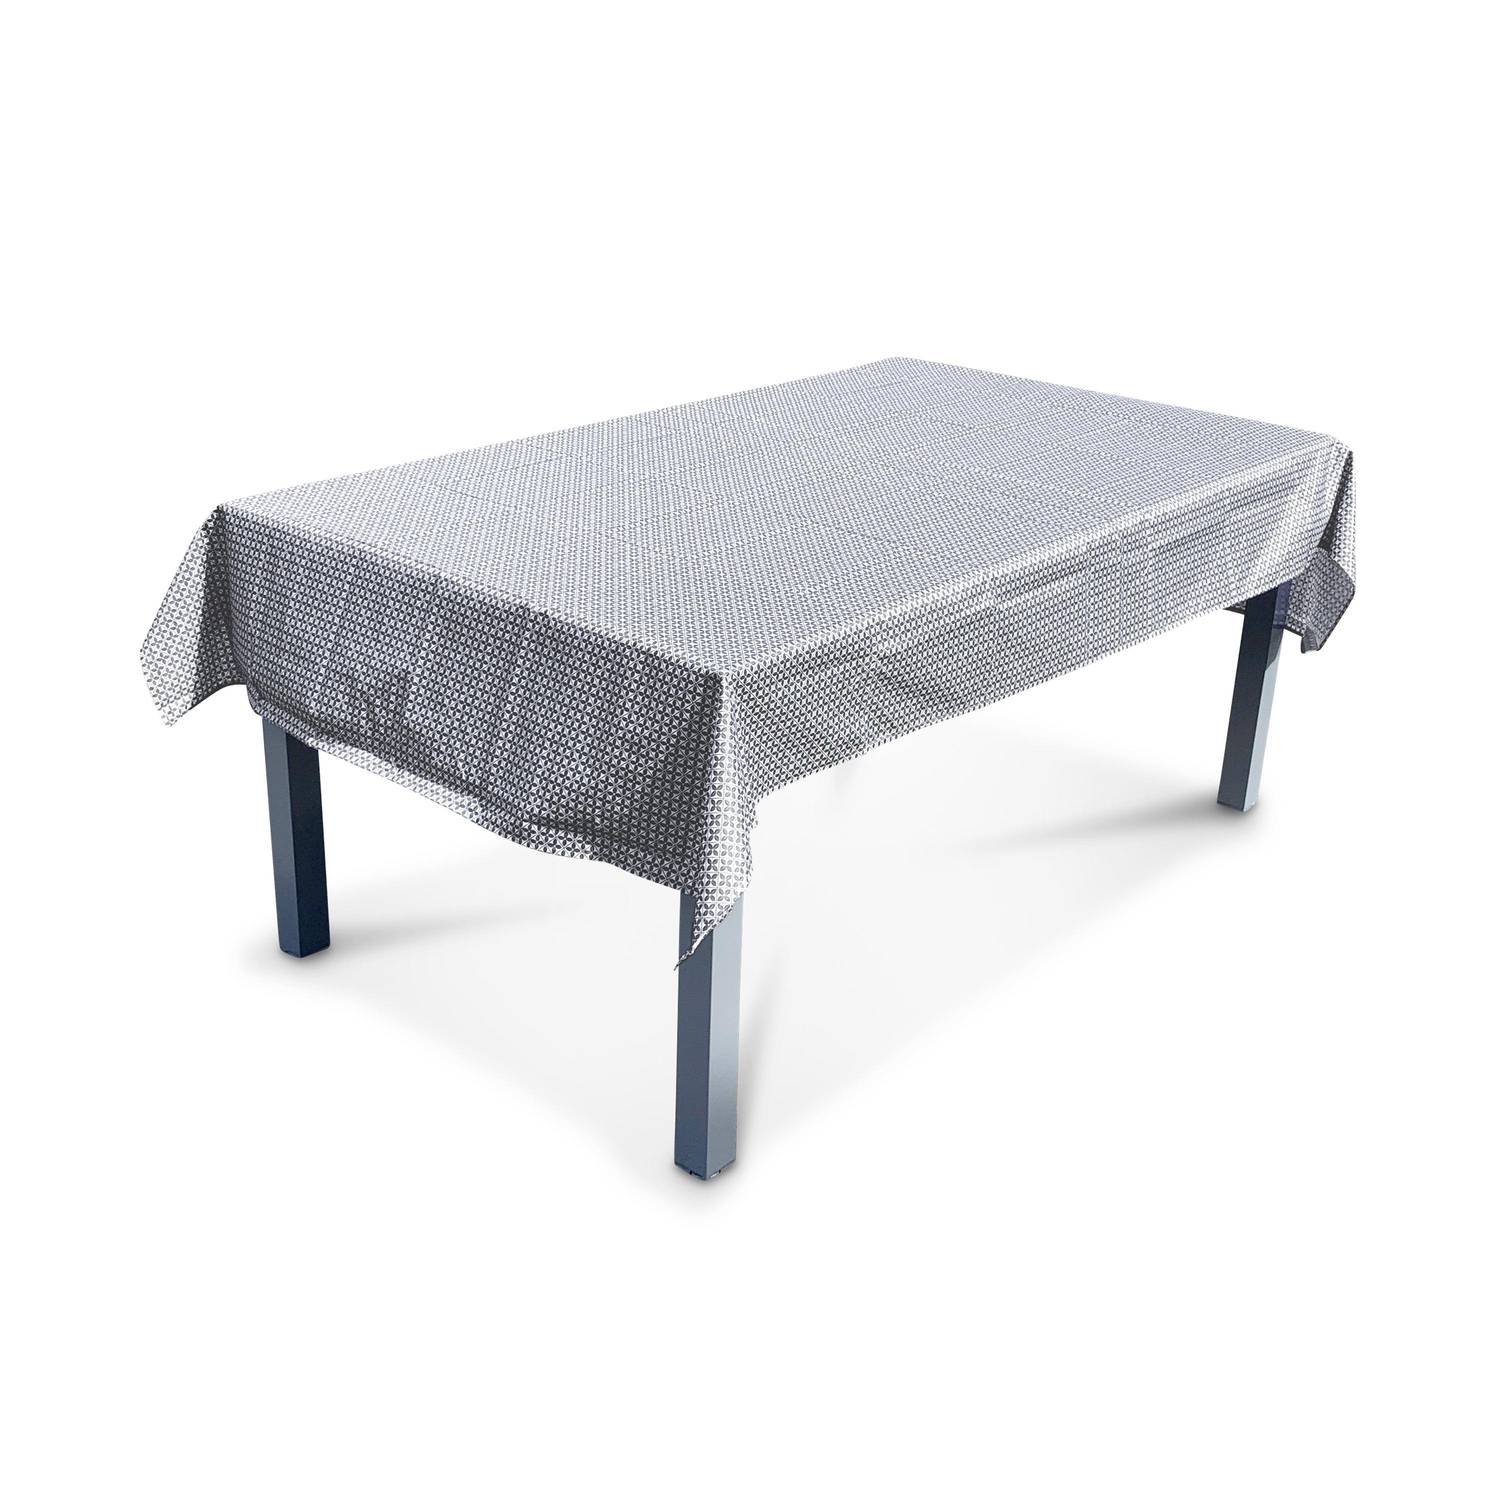 Kollektion HERITAGE - Outdoor-Tischdecke 140 x 240 cm Zementfliesendruck, 100% Polyester, schützt den Tisch, UV-Schutz, sommerlicher Stil Photo1